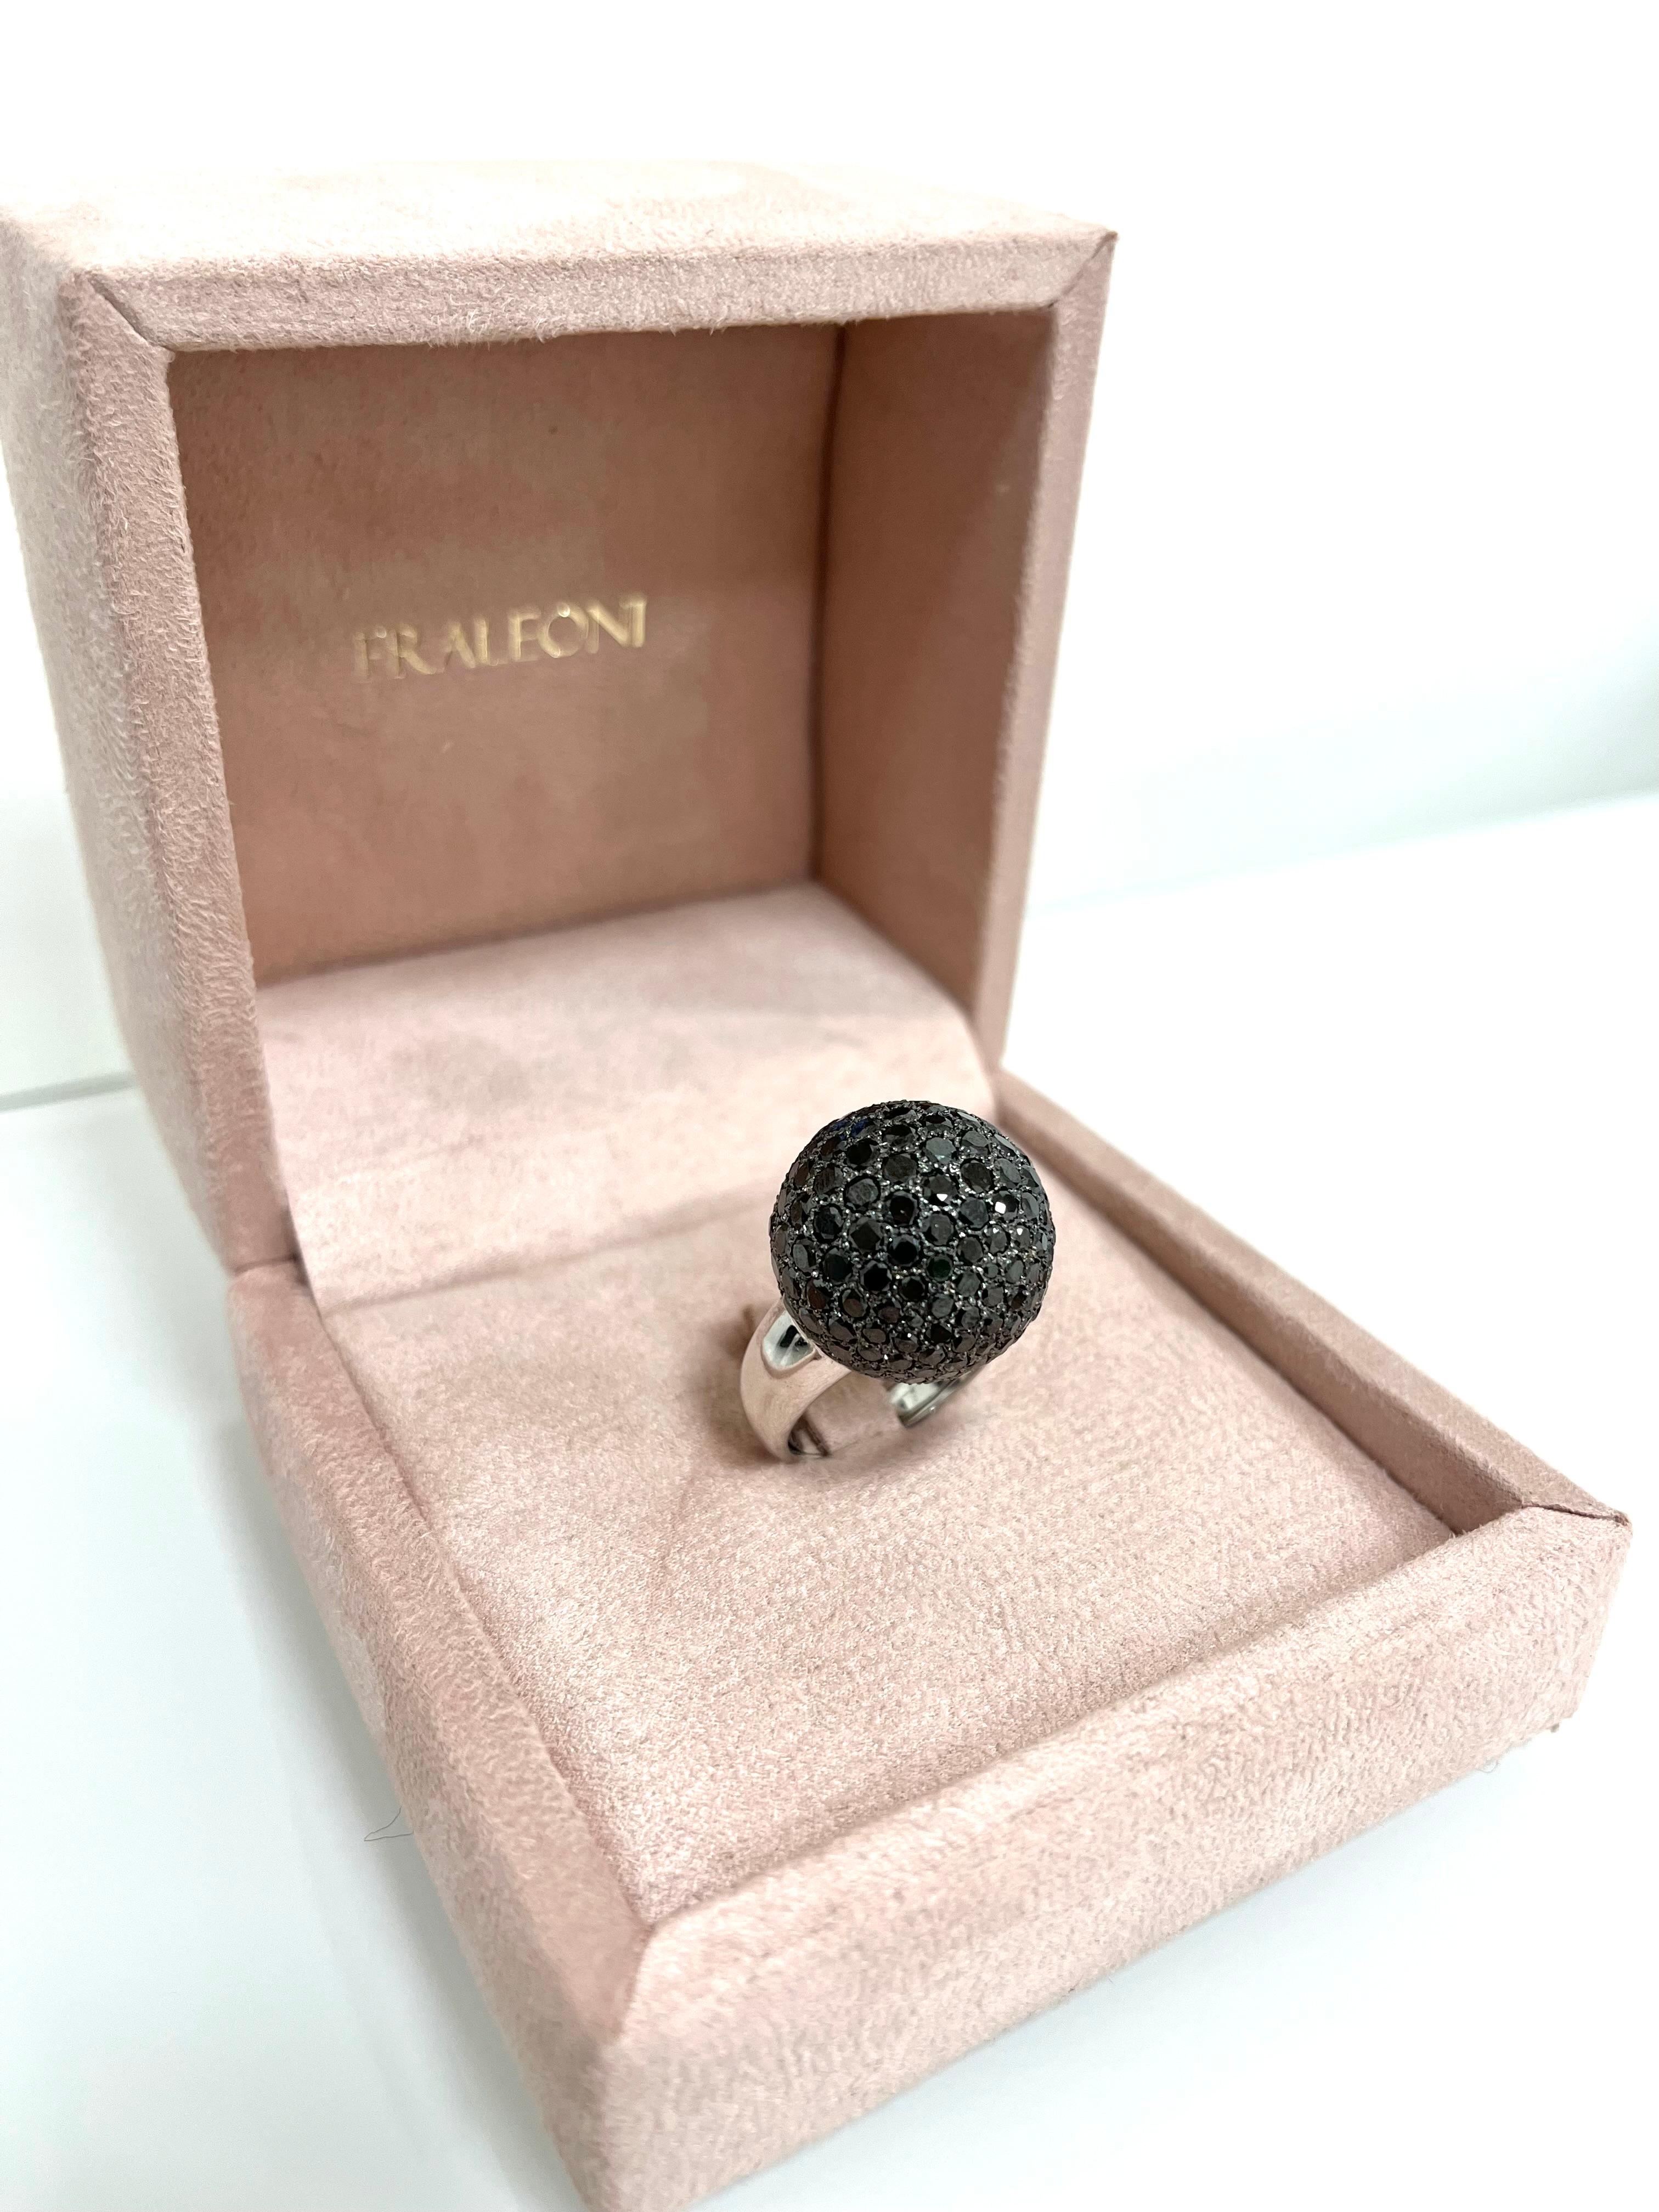 Fraleoni 18 Kt. White Gold Black Diamond Cocktail Ring For Sale 1